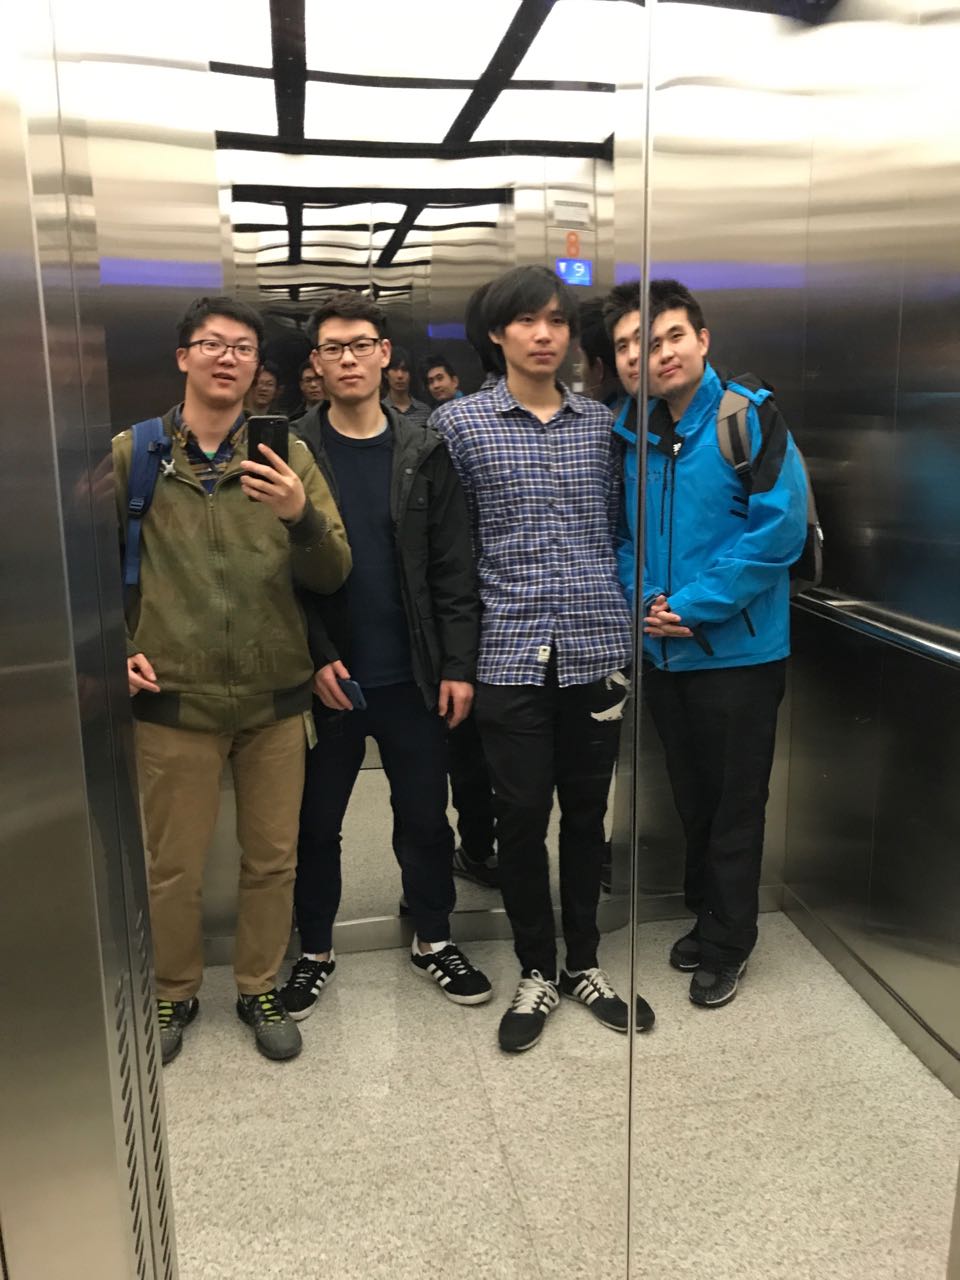 Above: KV-Direct team rushing for the SOSP deadline in MSRA's elevator, from left: Xiao Wencong, Lu Yuanwei, Ruan Zhenyuan, Li Bojie